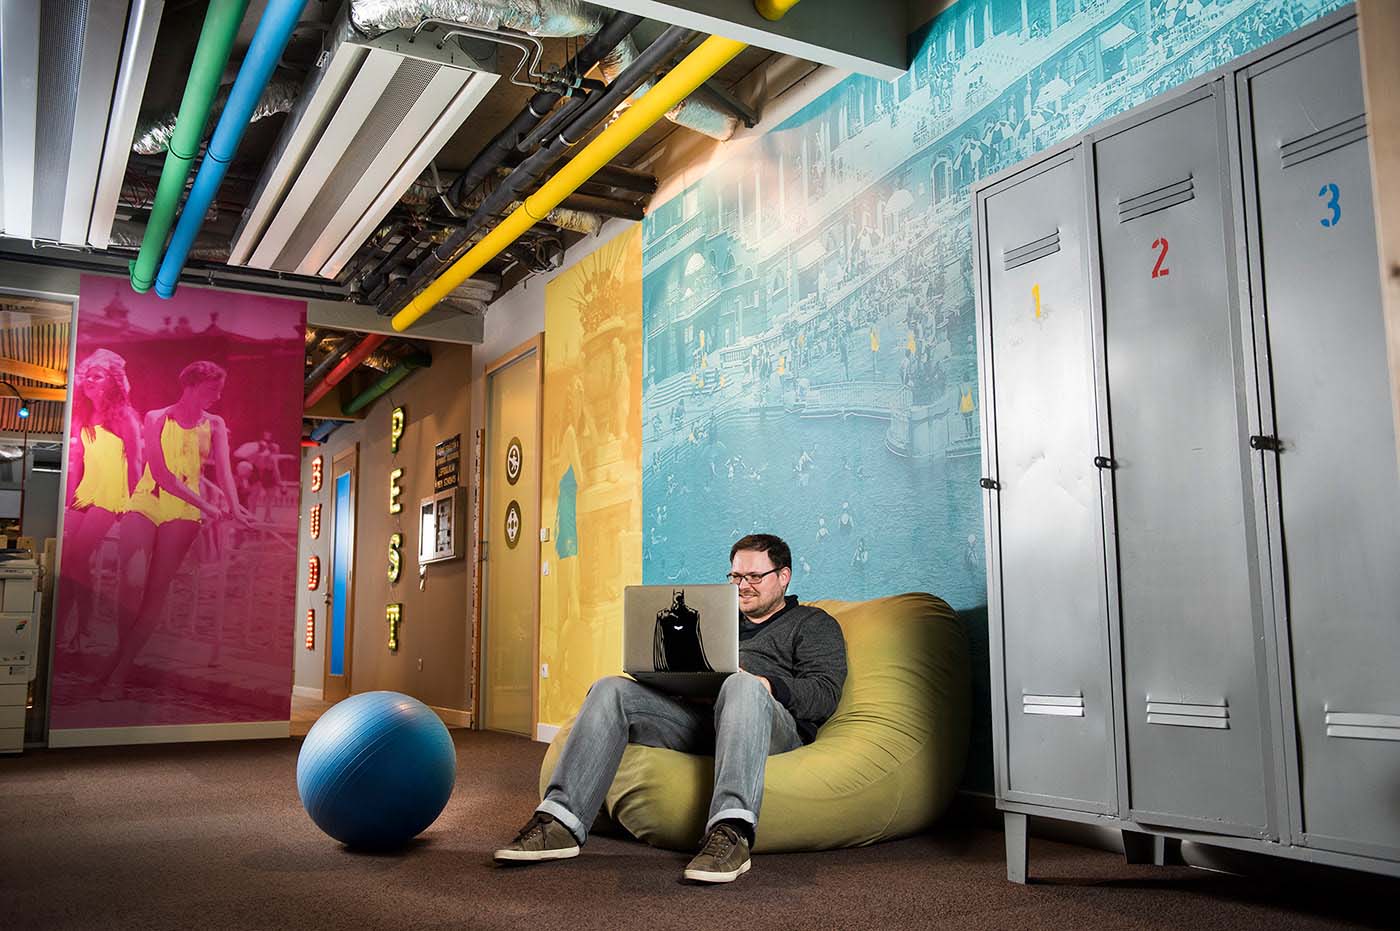 A Google Budapest iroda központi helyisége színes, nyomtatott faldekorációkkal, uszodai szekrényekkel, labdával és babzsákkal, amiben kényelmesen lehet dolgozni.